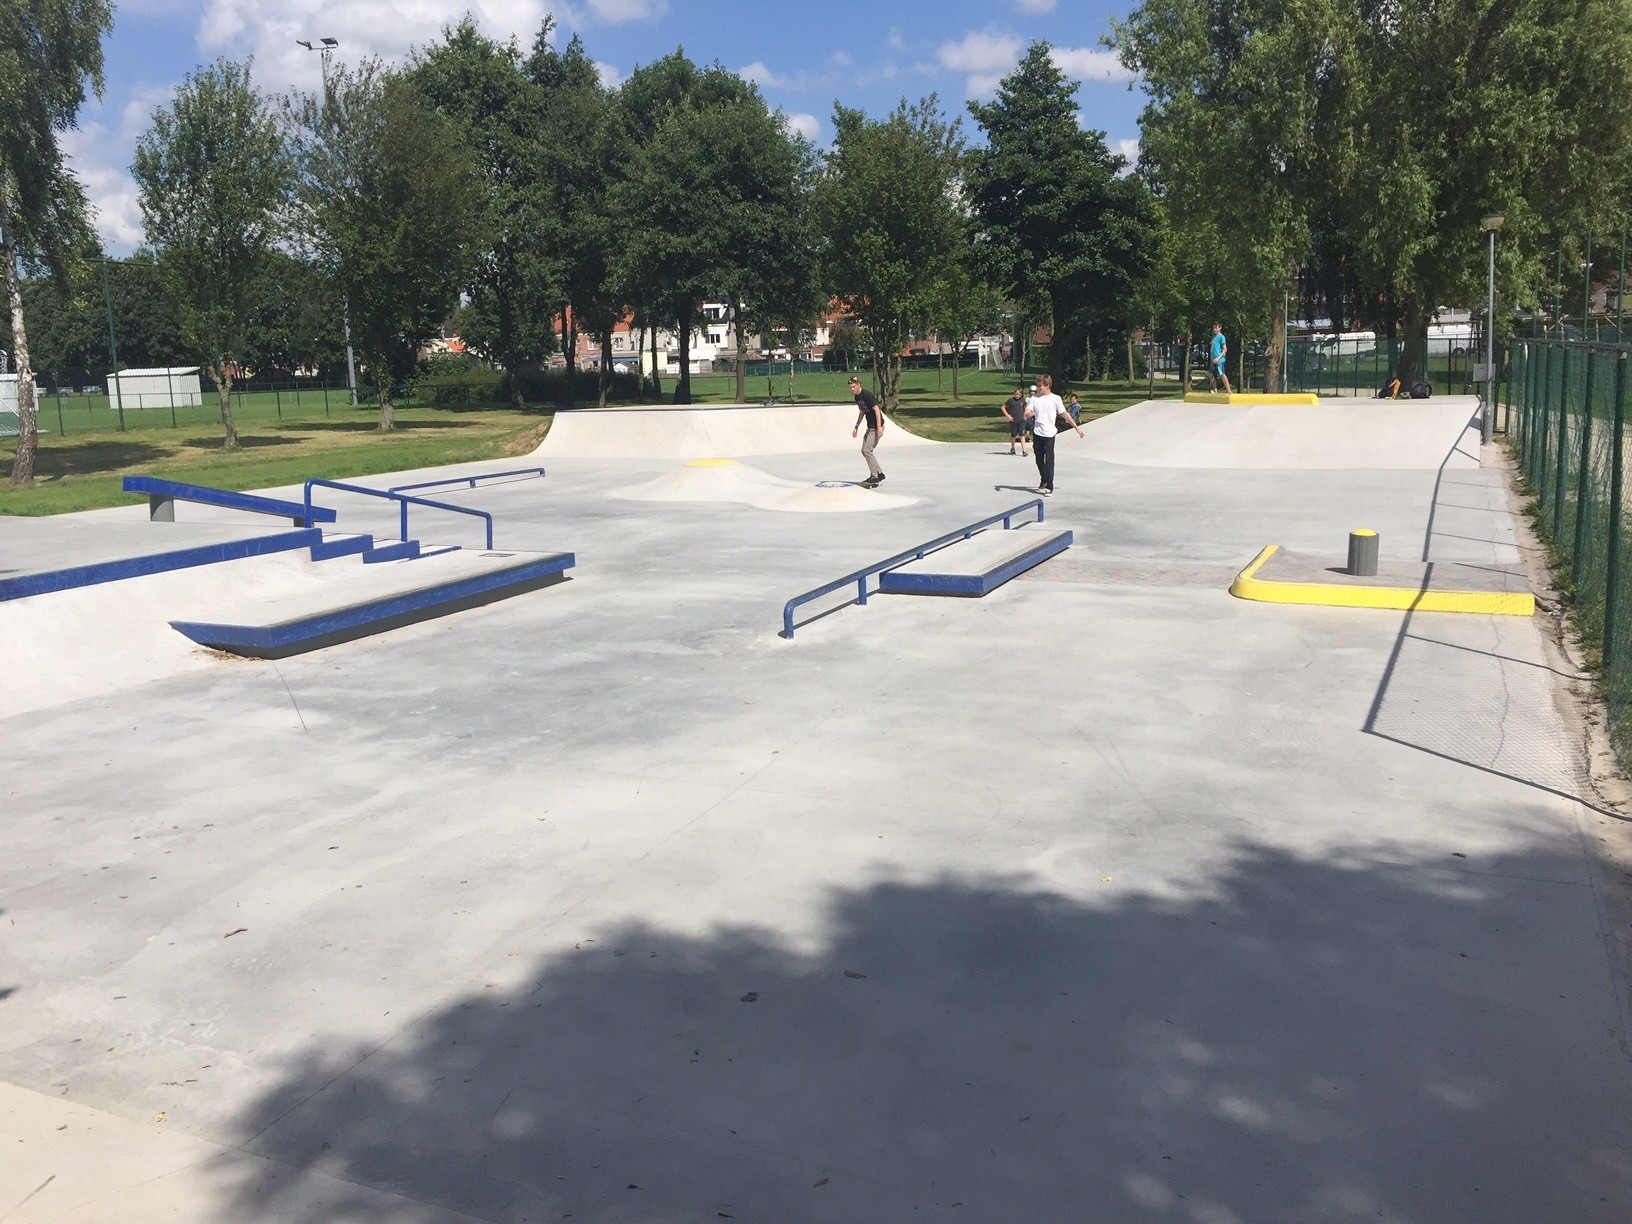 Temse KSV Skatepark